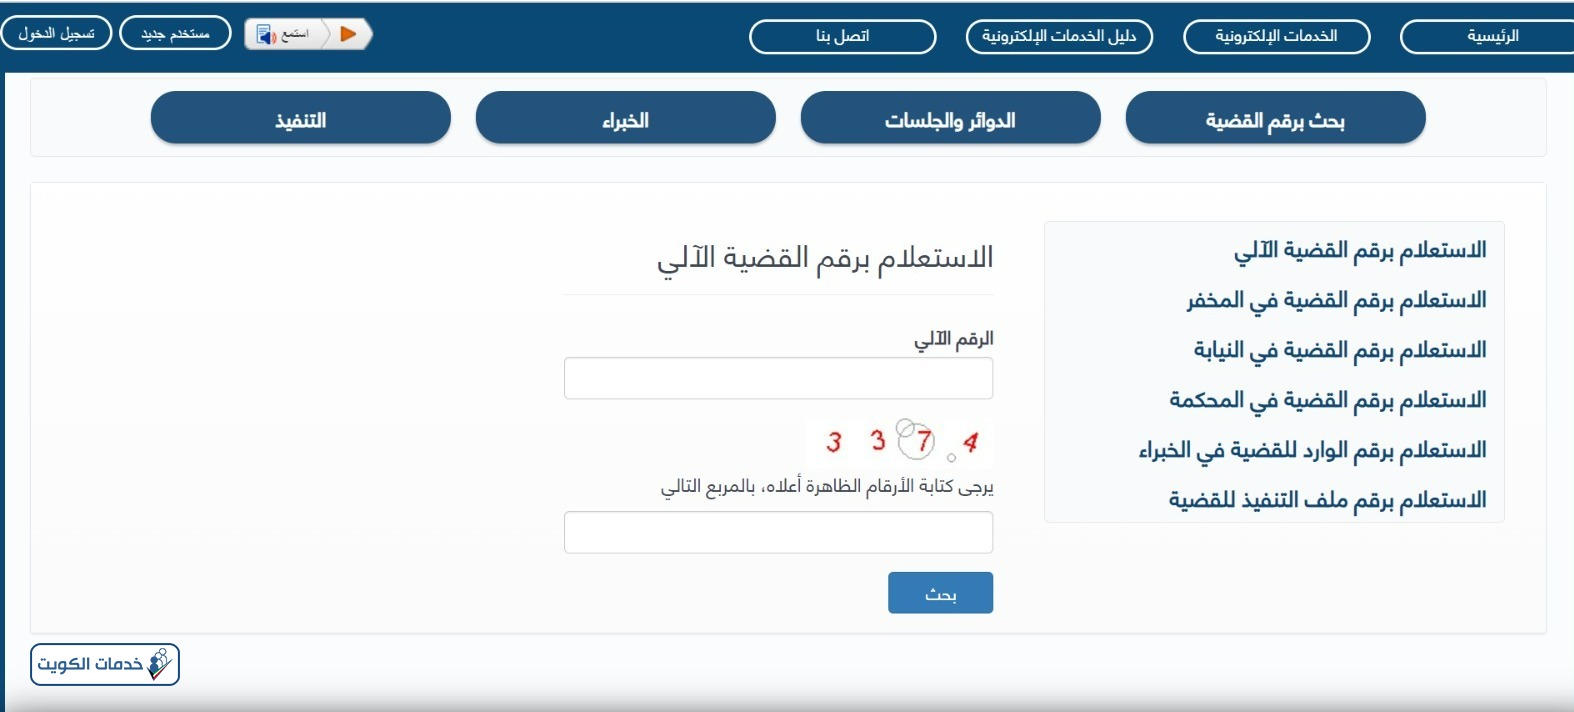 خطوات الاستعلام عن القضايا بالرقم الآلي وزارة العدل الكويت